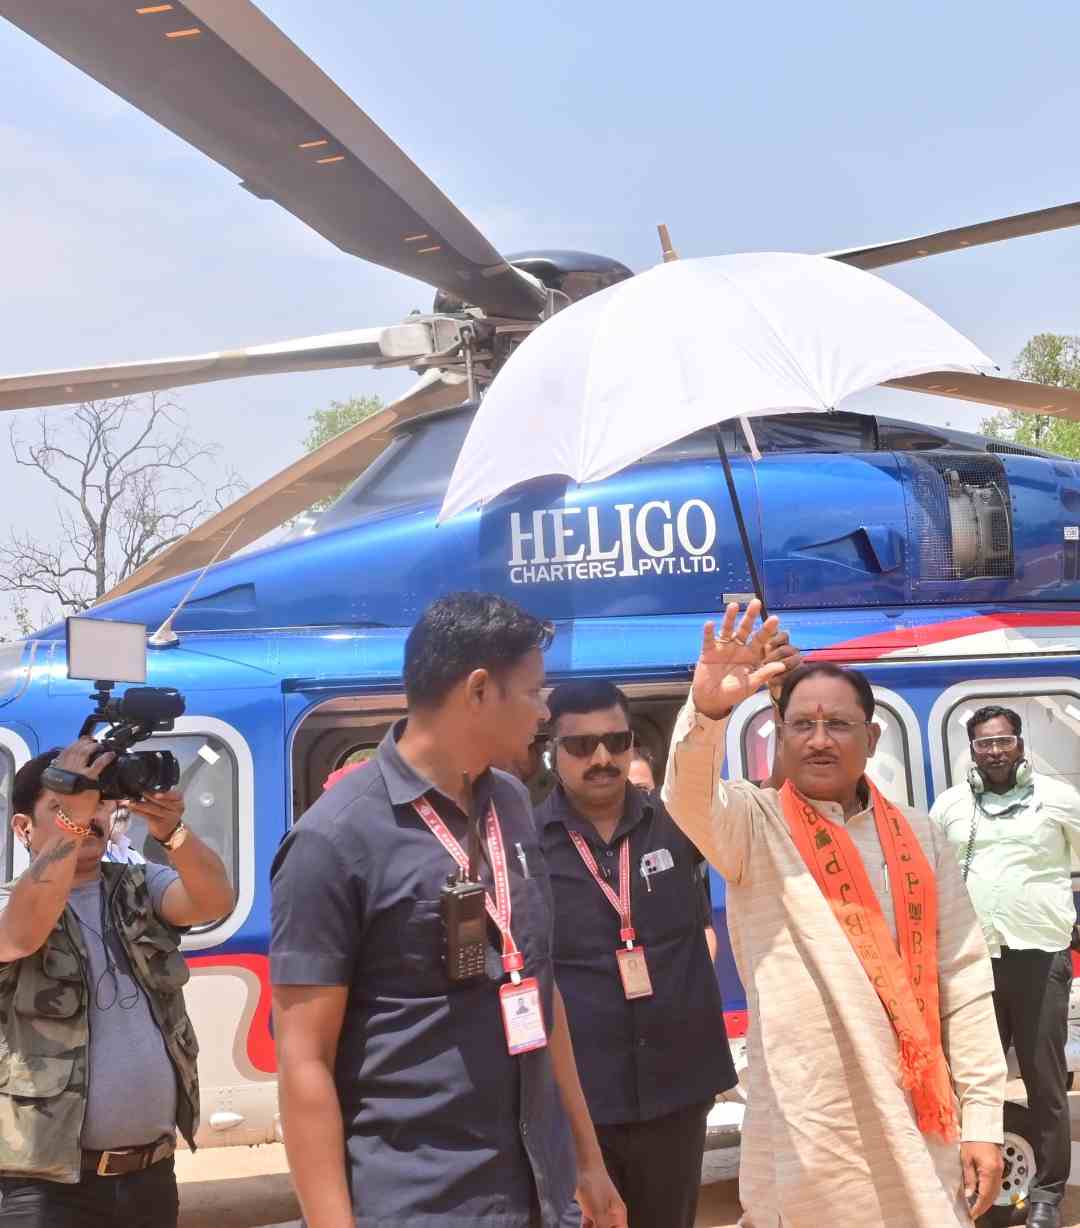 AMIKAPUR : आरक्षण खत्म नहीं होगा और न महतारी वंदन योजना बंद होगी: मुख्यमंत्री विष्णुदेव साय